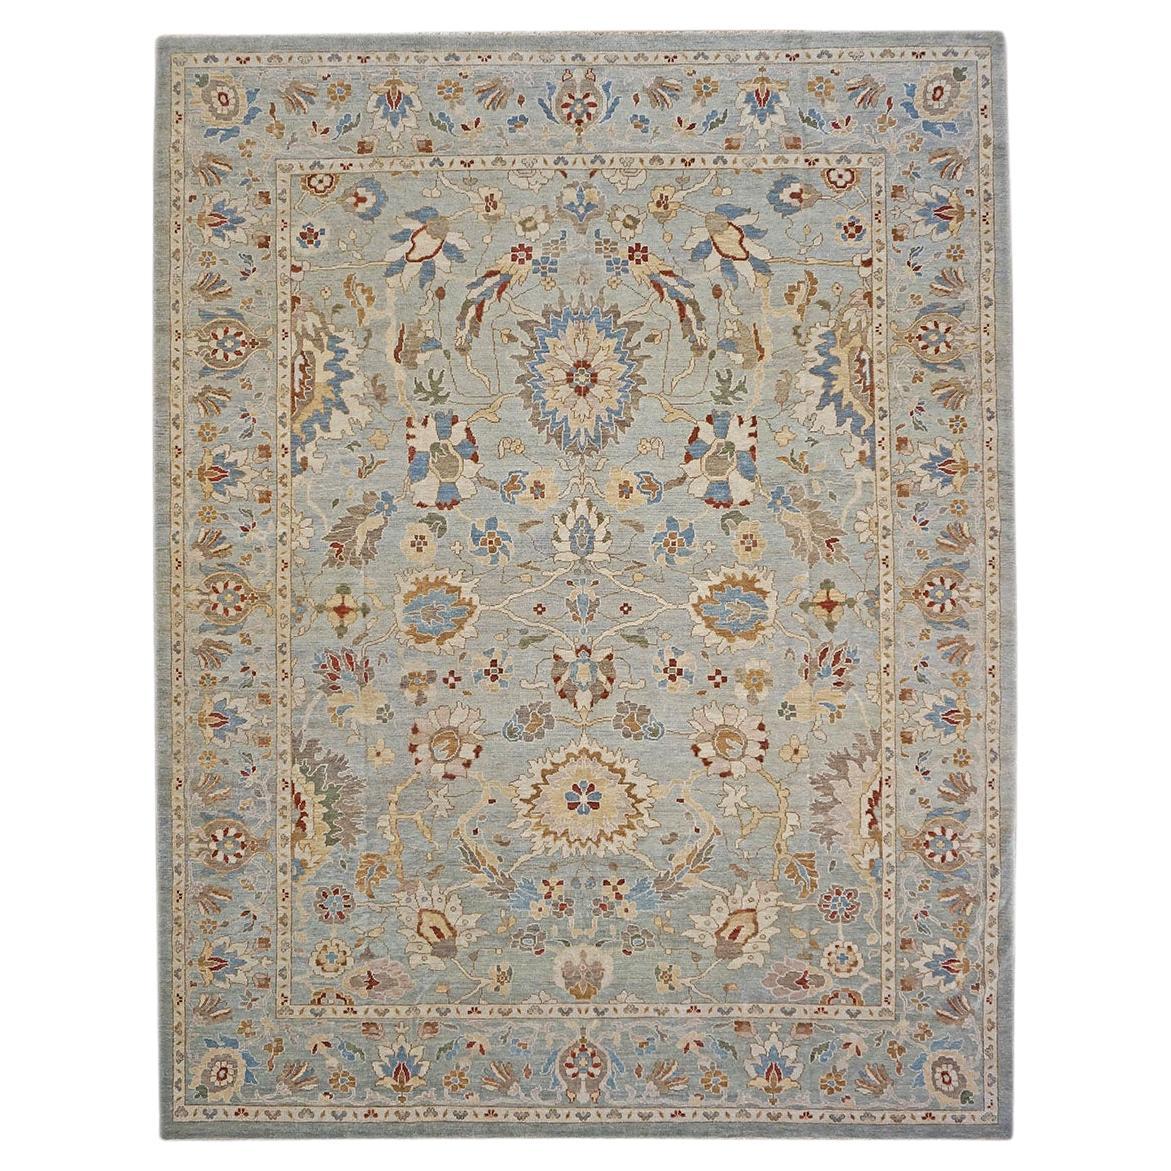 Sultanabad Master 9x12 Schiefer, Elfenbein, Blau, Rot, handgefertigter Teppich, 21. Jahrhundert